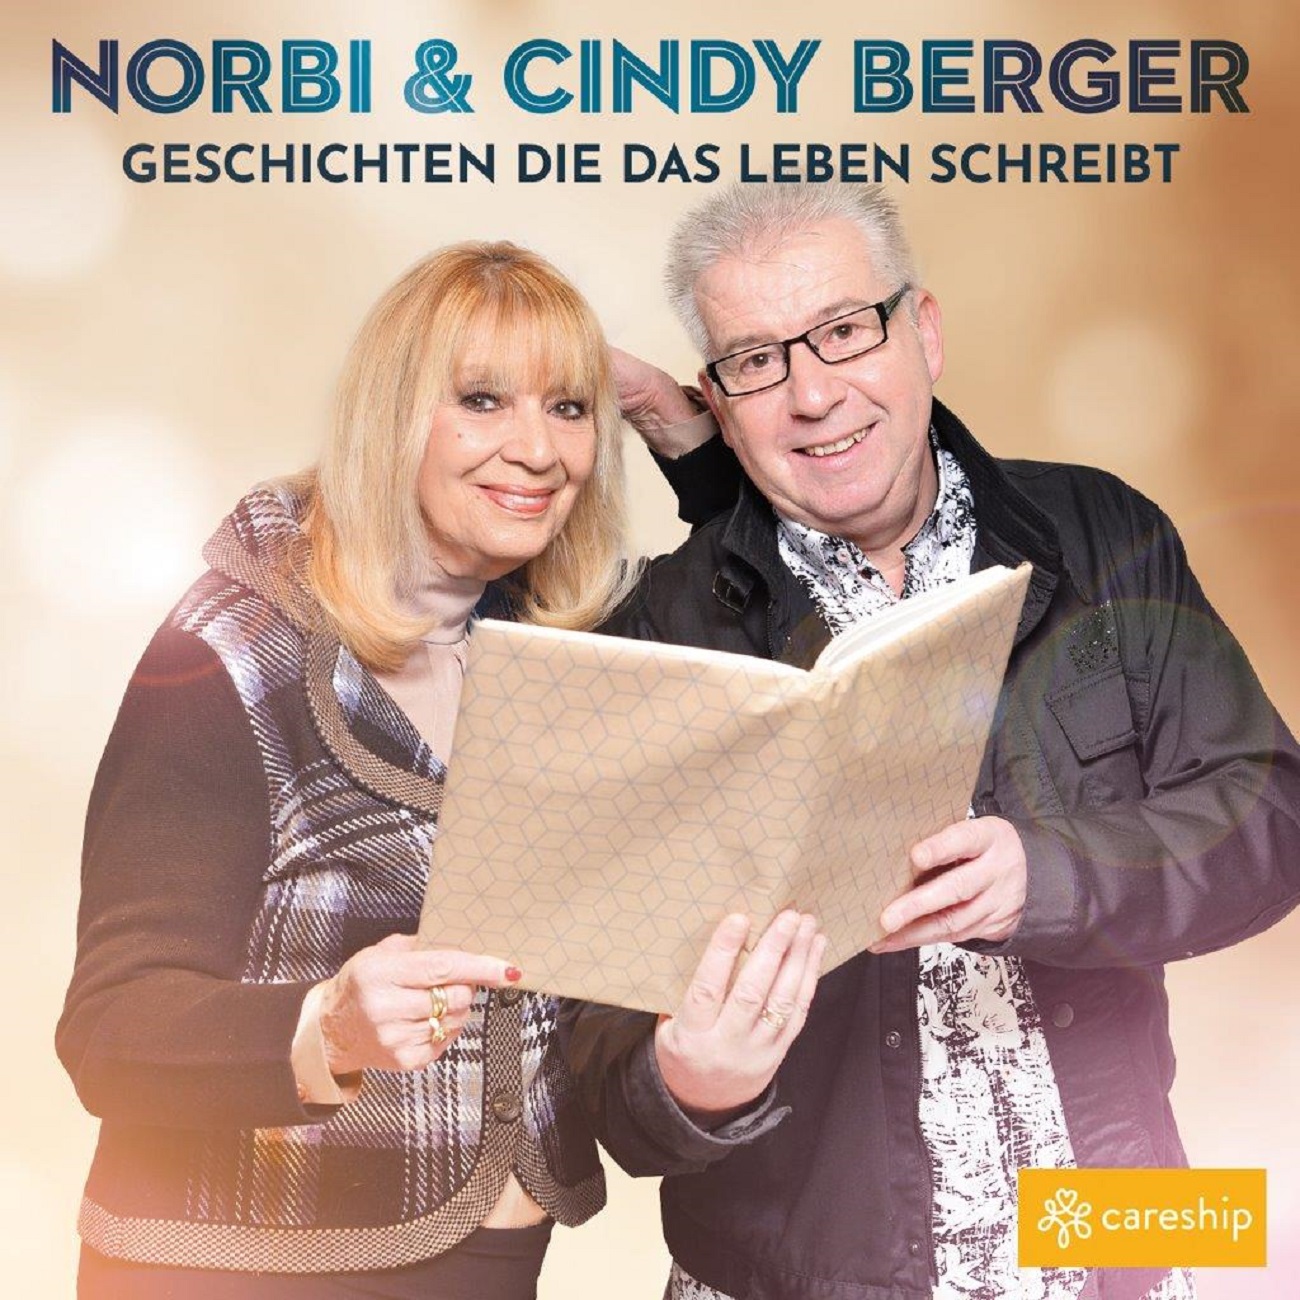 Norbi und Cindy Berger - Geschichten die das Leben schreibt - Cover mit  Logo.jpg